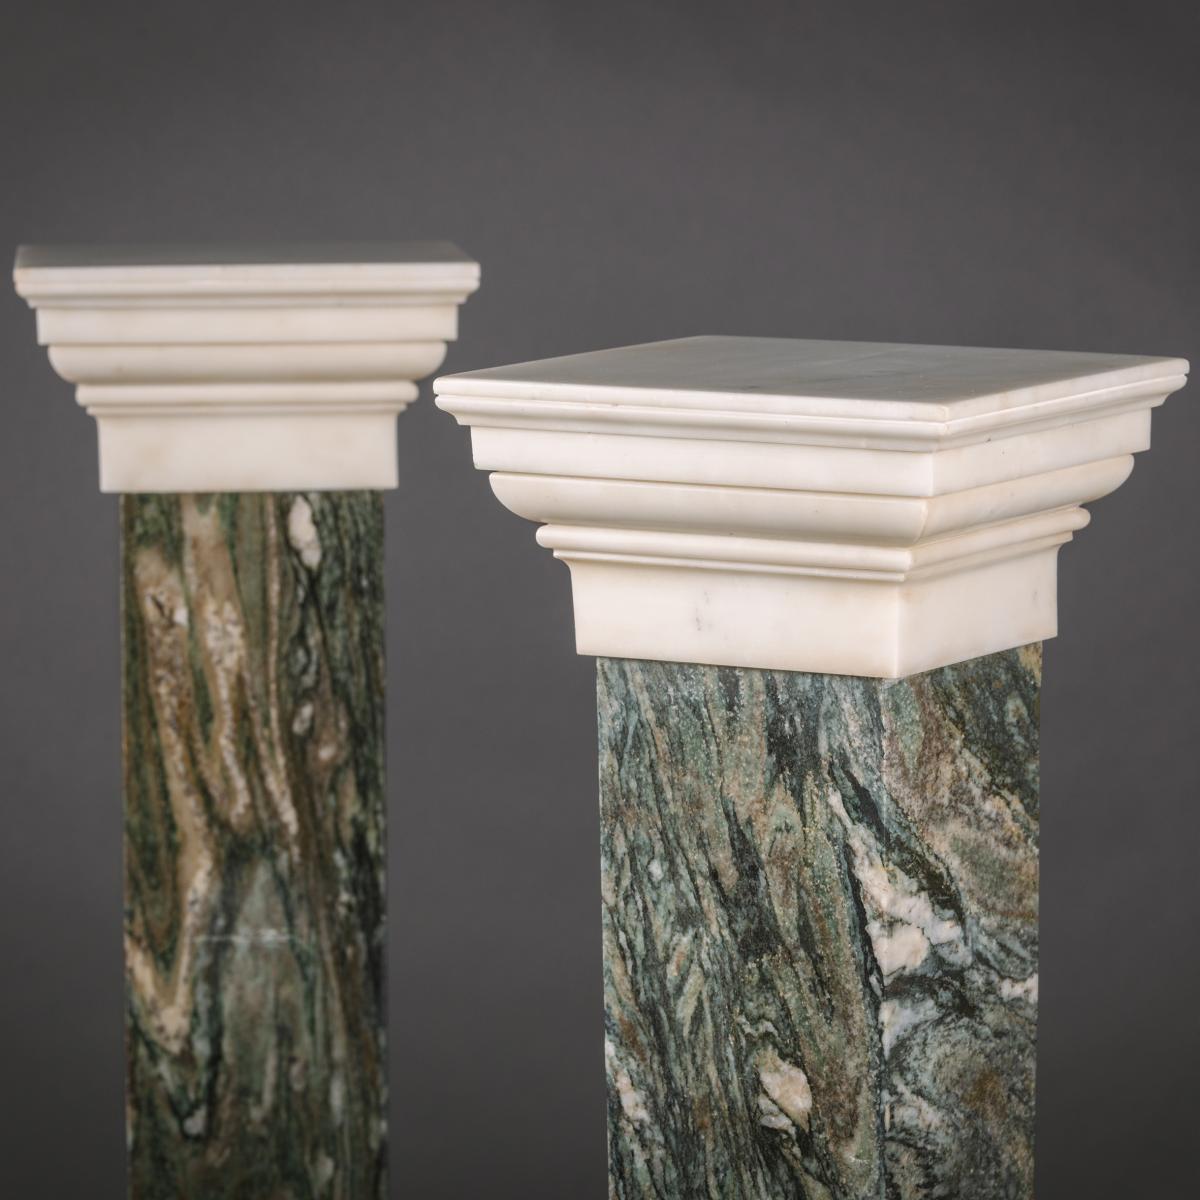 Green Breccia and Carrara Marble Pedestals